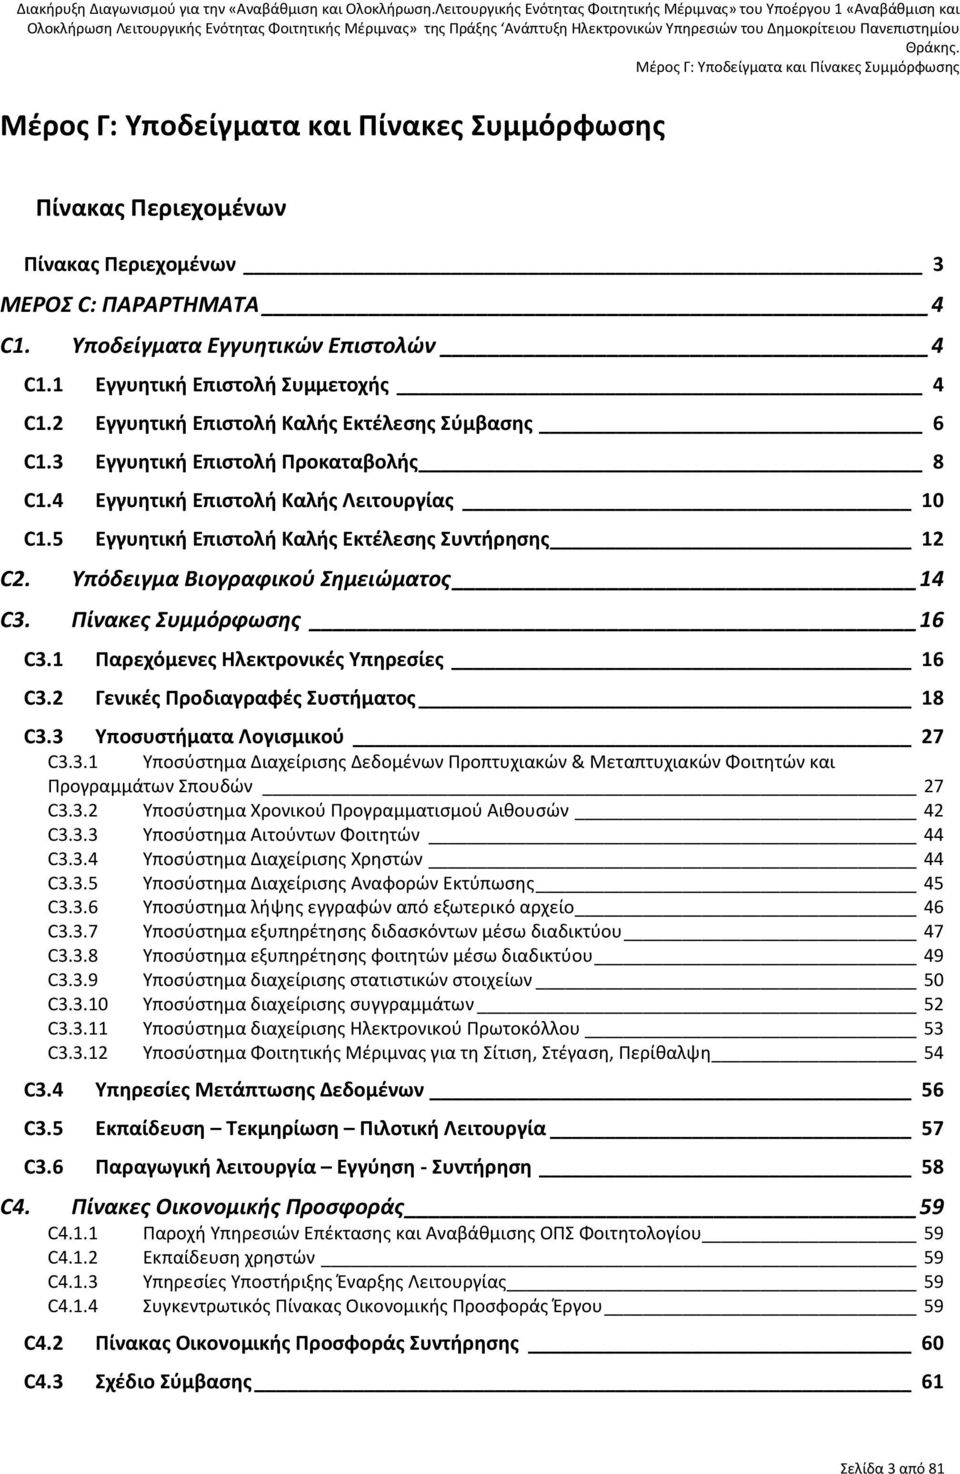 Πίνακες Συμμόρφωσης 16 C3.1 Παρεχόμενες Ηλεκτρονικές Υπηρεσίες 16 C3.2 Γενικές Προδιαγραφές Συστήματος 18 C3.3 Υποσυστήματα Λογισμικού 27 C3.3.1 Υποσύστημα Διαχείρισης Δεδομένων Προπτυχιακών & Μεταπτυχιακών Φοιτητών και Προγραμμάτων Σπουδών 27 C3.